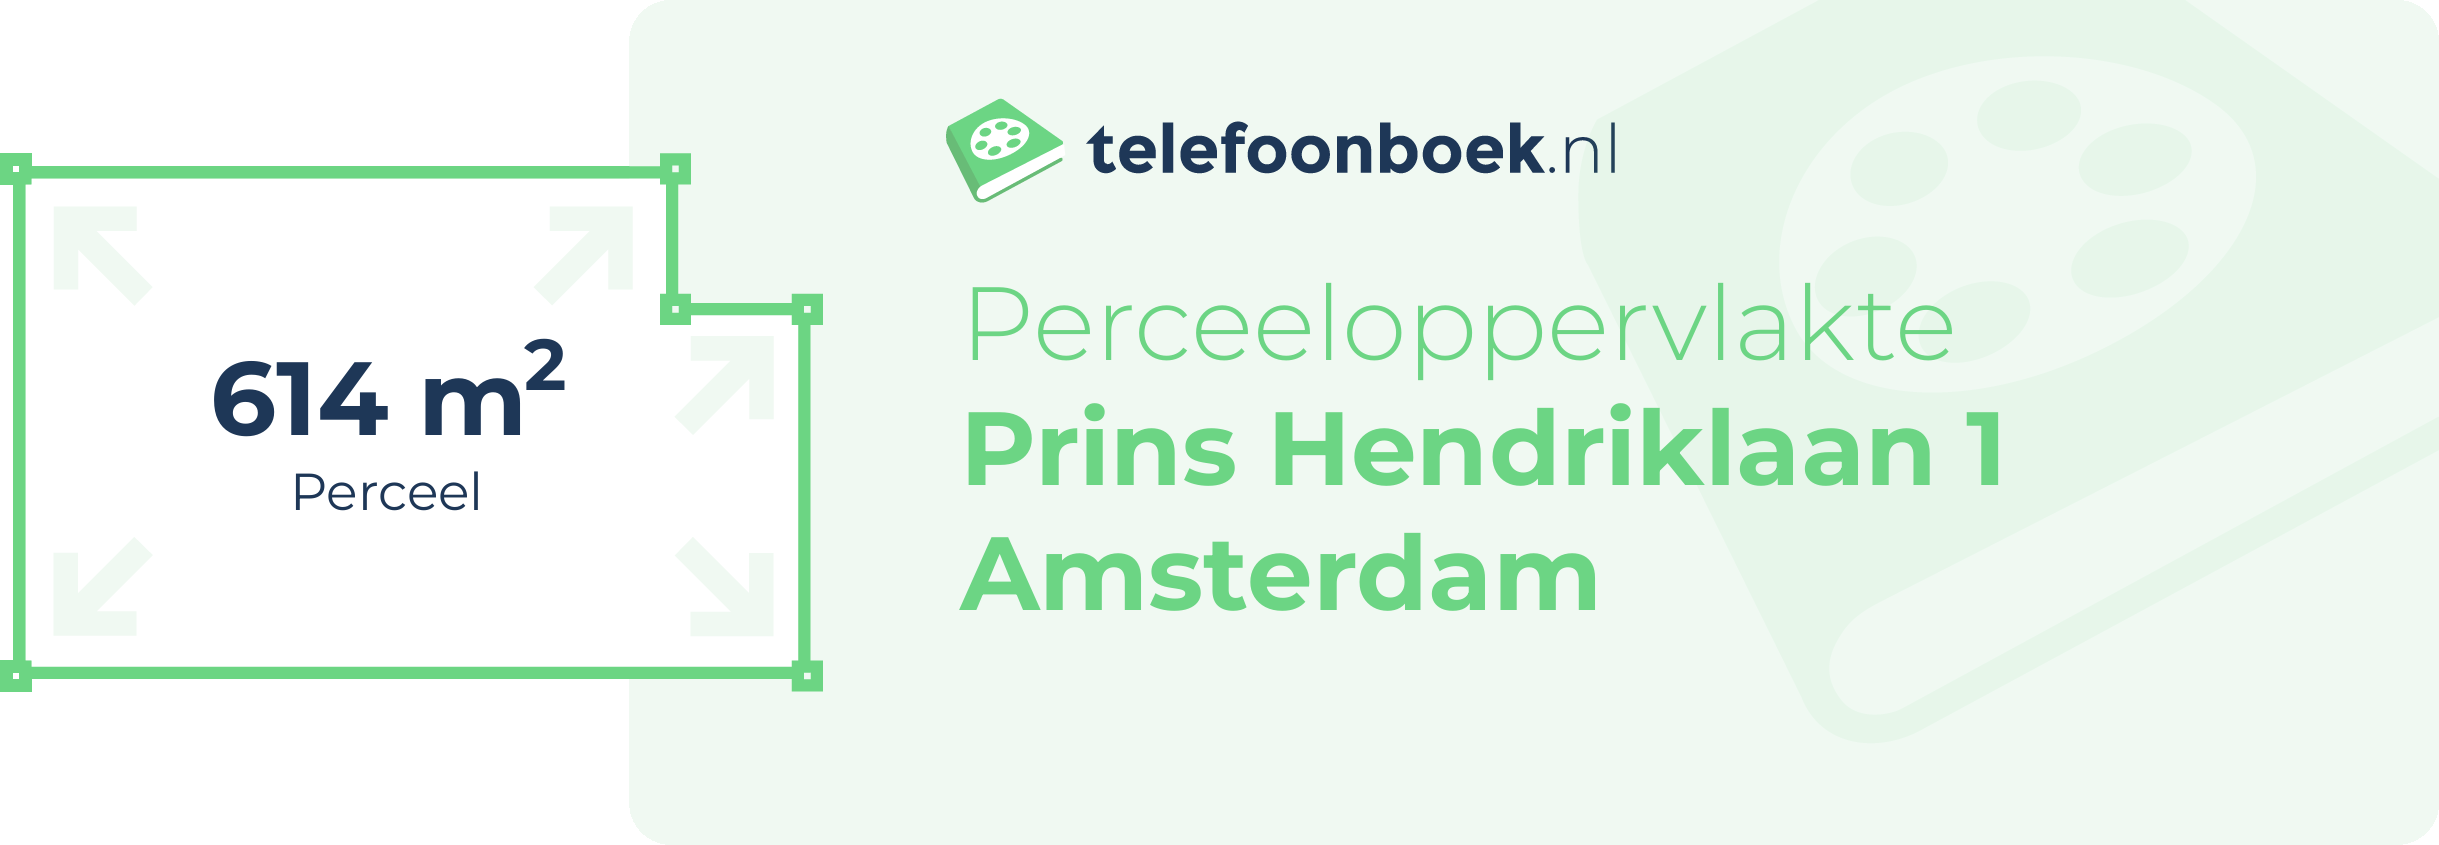 Perceeloppervlakte Prins Hendriklaan 1 Amsterdam